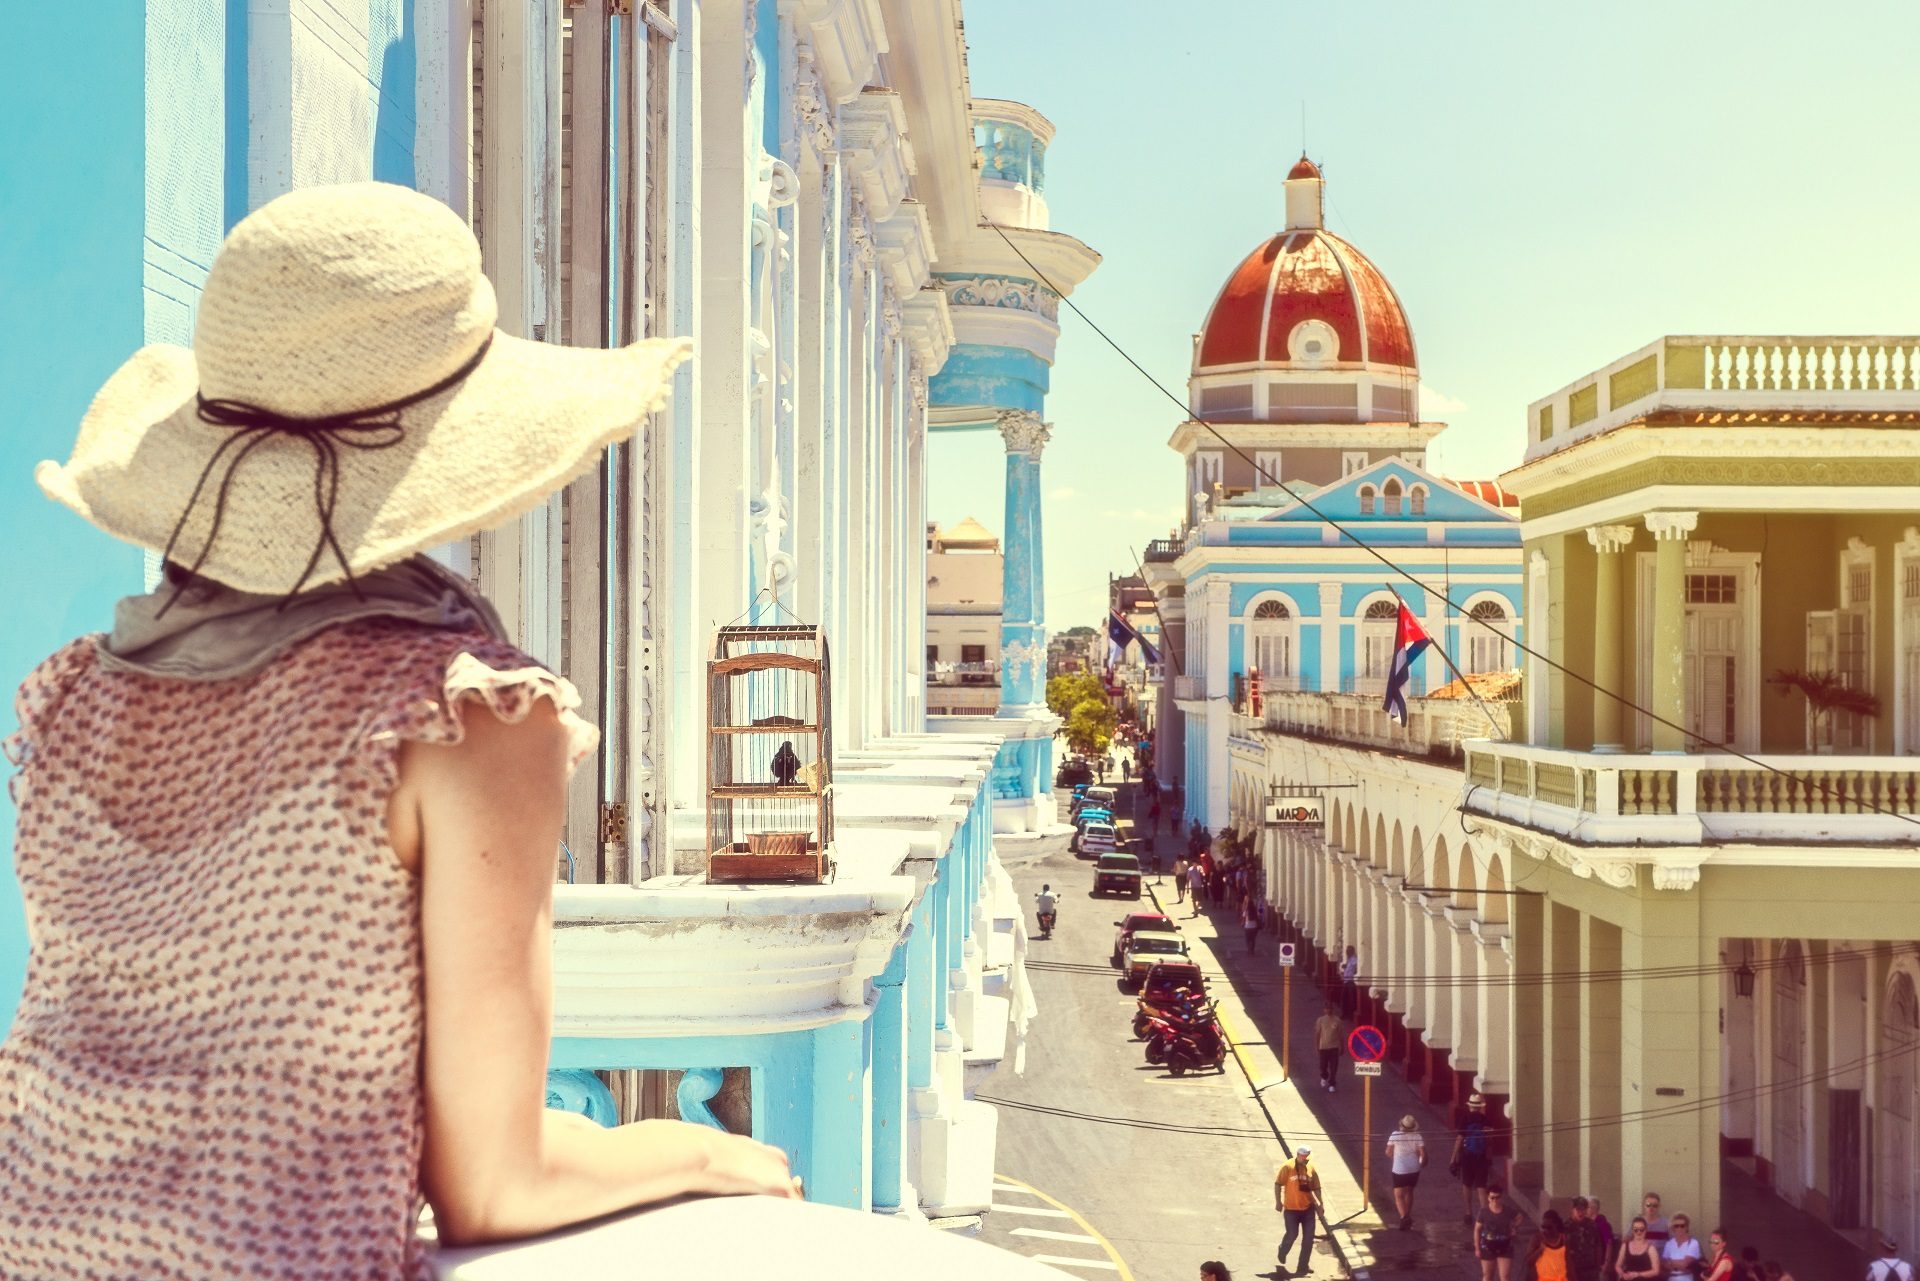 turystka, dziewczyna w kapeluszu, stare samochody, zabytkowe budynki, zabytki, Kuba, Hawana, atrakcje Kuby, wczasy, wakacje, zwiedzanie, jeszcze tyle do odkrycia